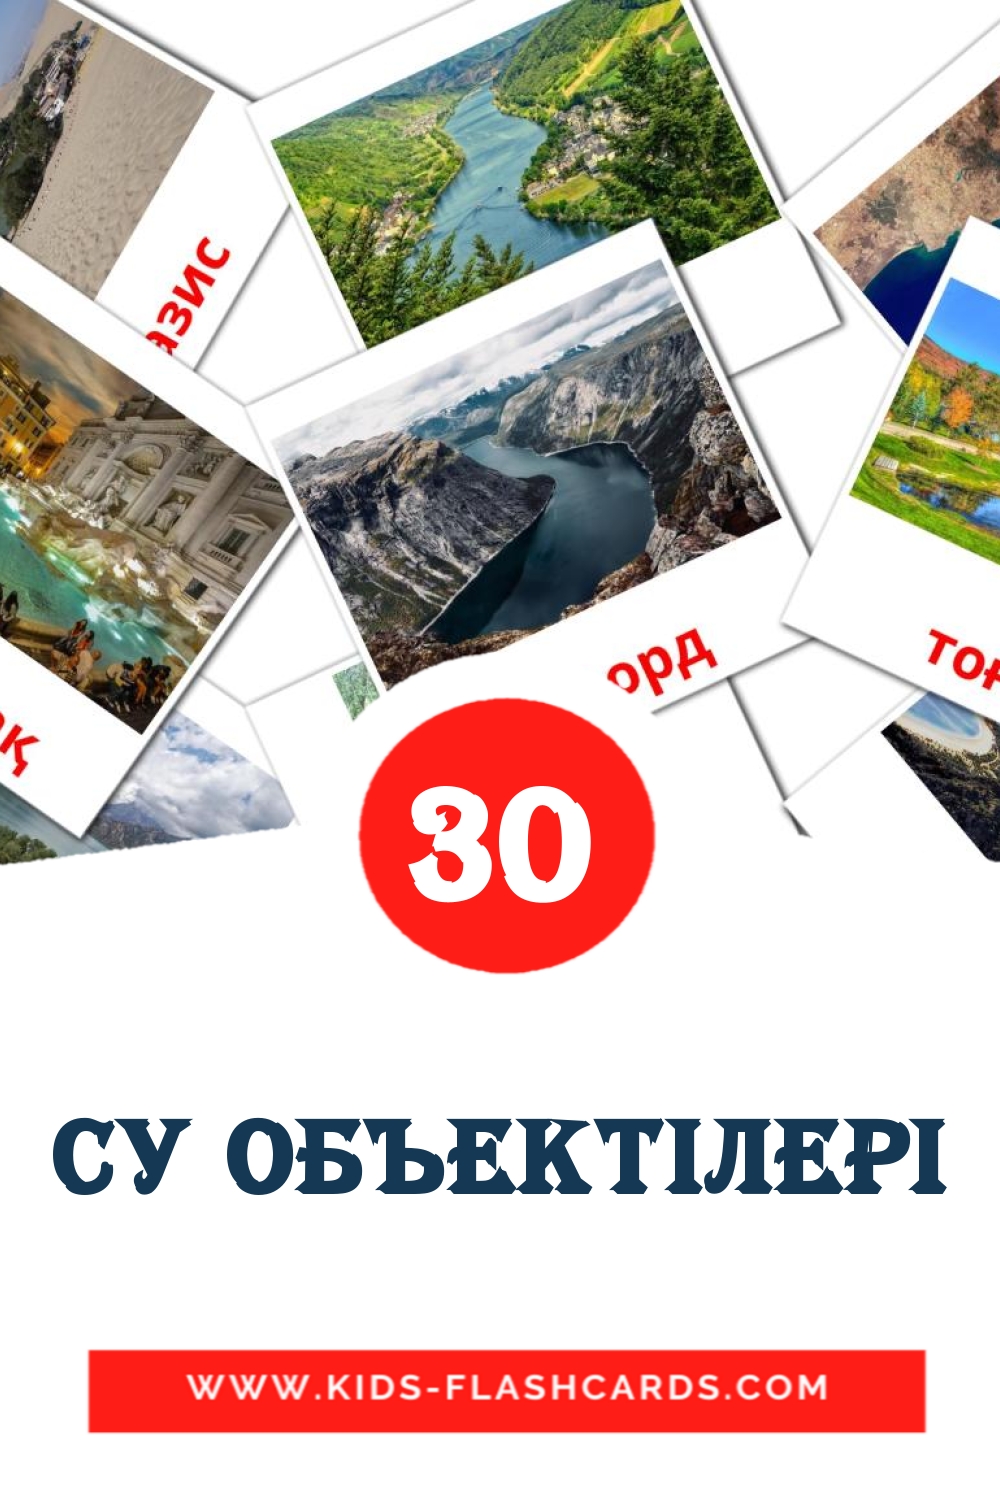 30 Cartões com Imagens de Су объектілері para Jardim de Infância em kazakh